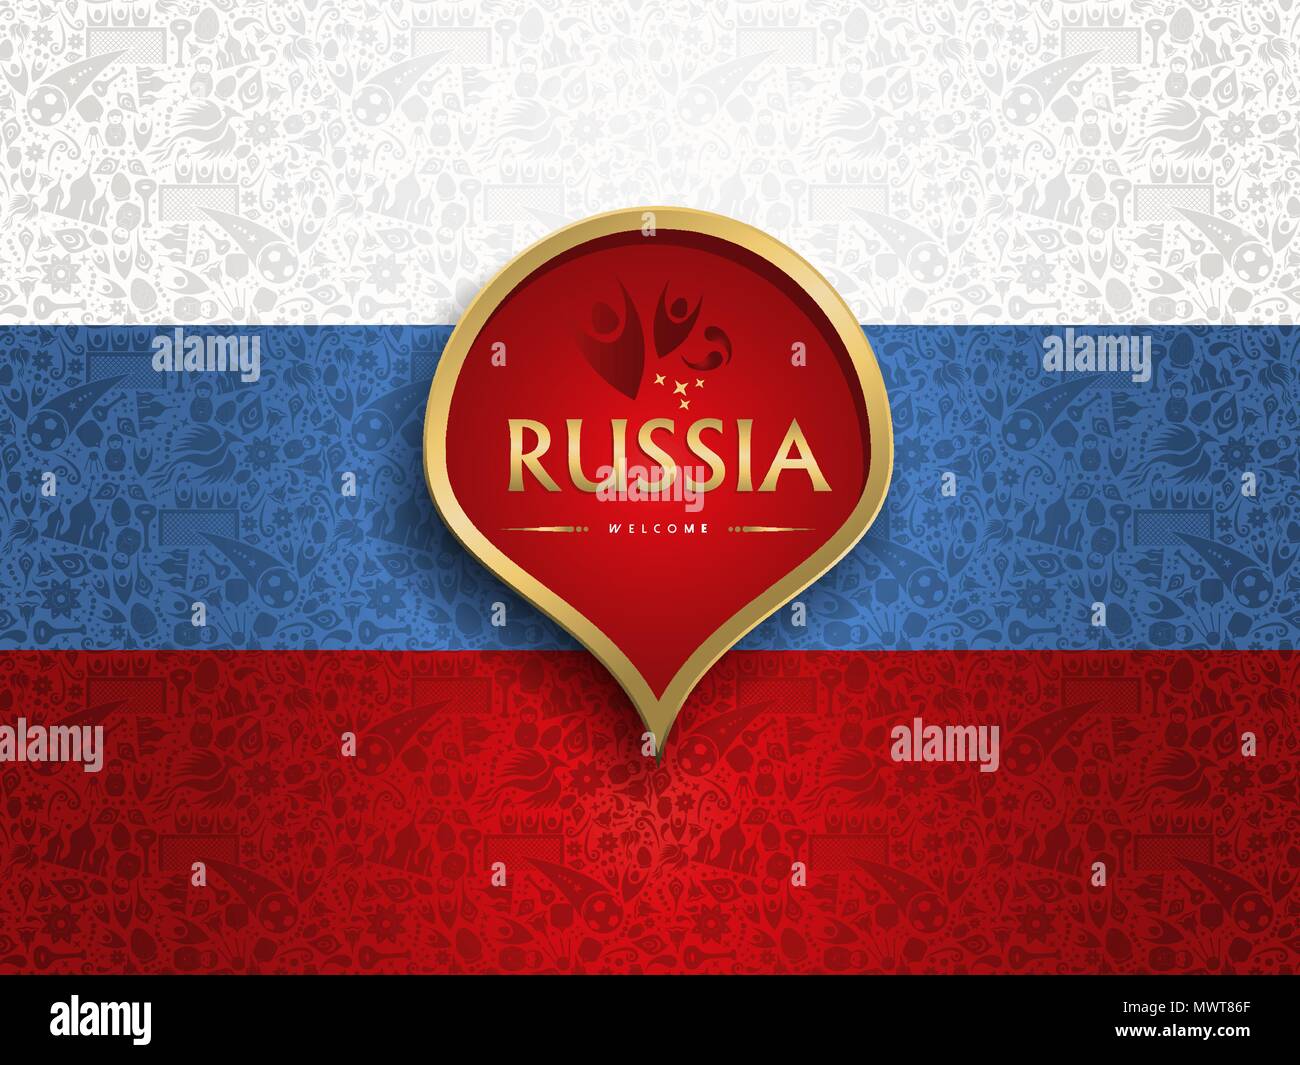 Russland symbol Dekoration Hintergrund im Land Flagge Farben. Traditionelle russische Kultur Elemente Vorlage für 2018 Fußball-Event. Schließt Fußball pla Stock Vektor